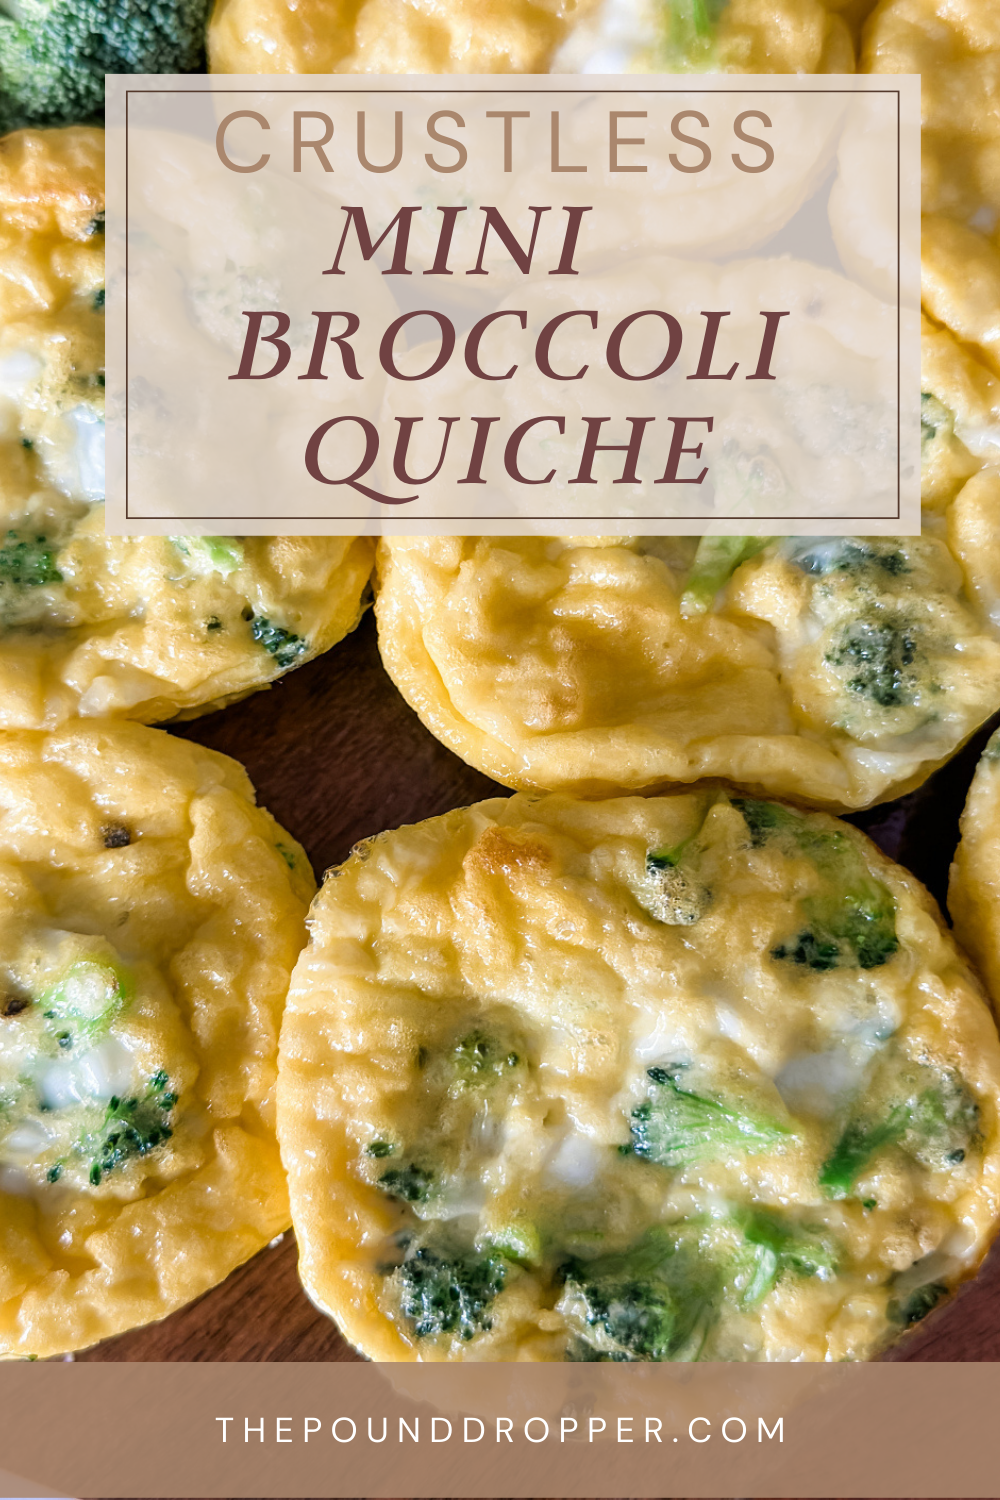 Mini Crustless Broccoli Quiche via @pounddropper